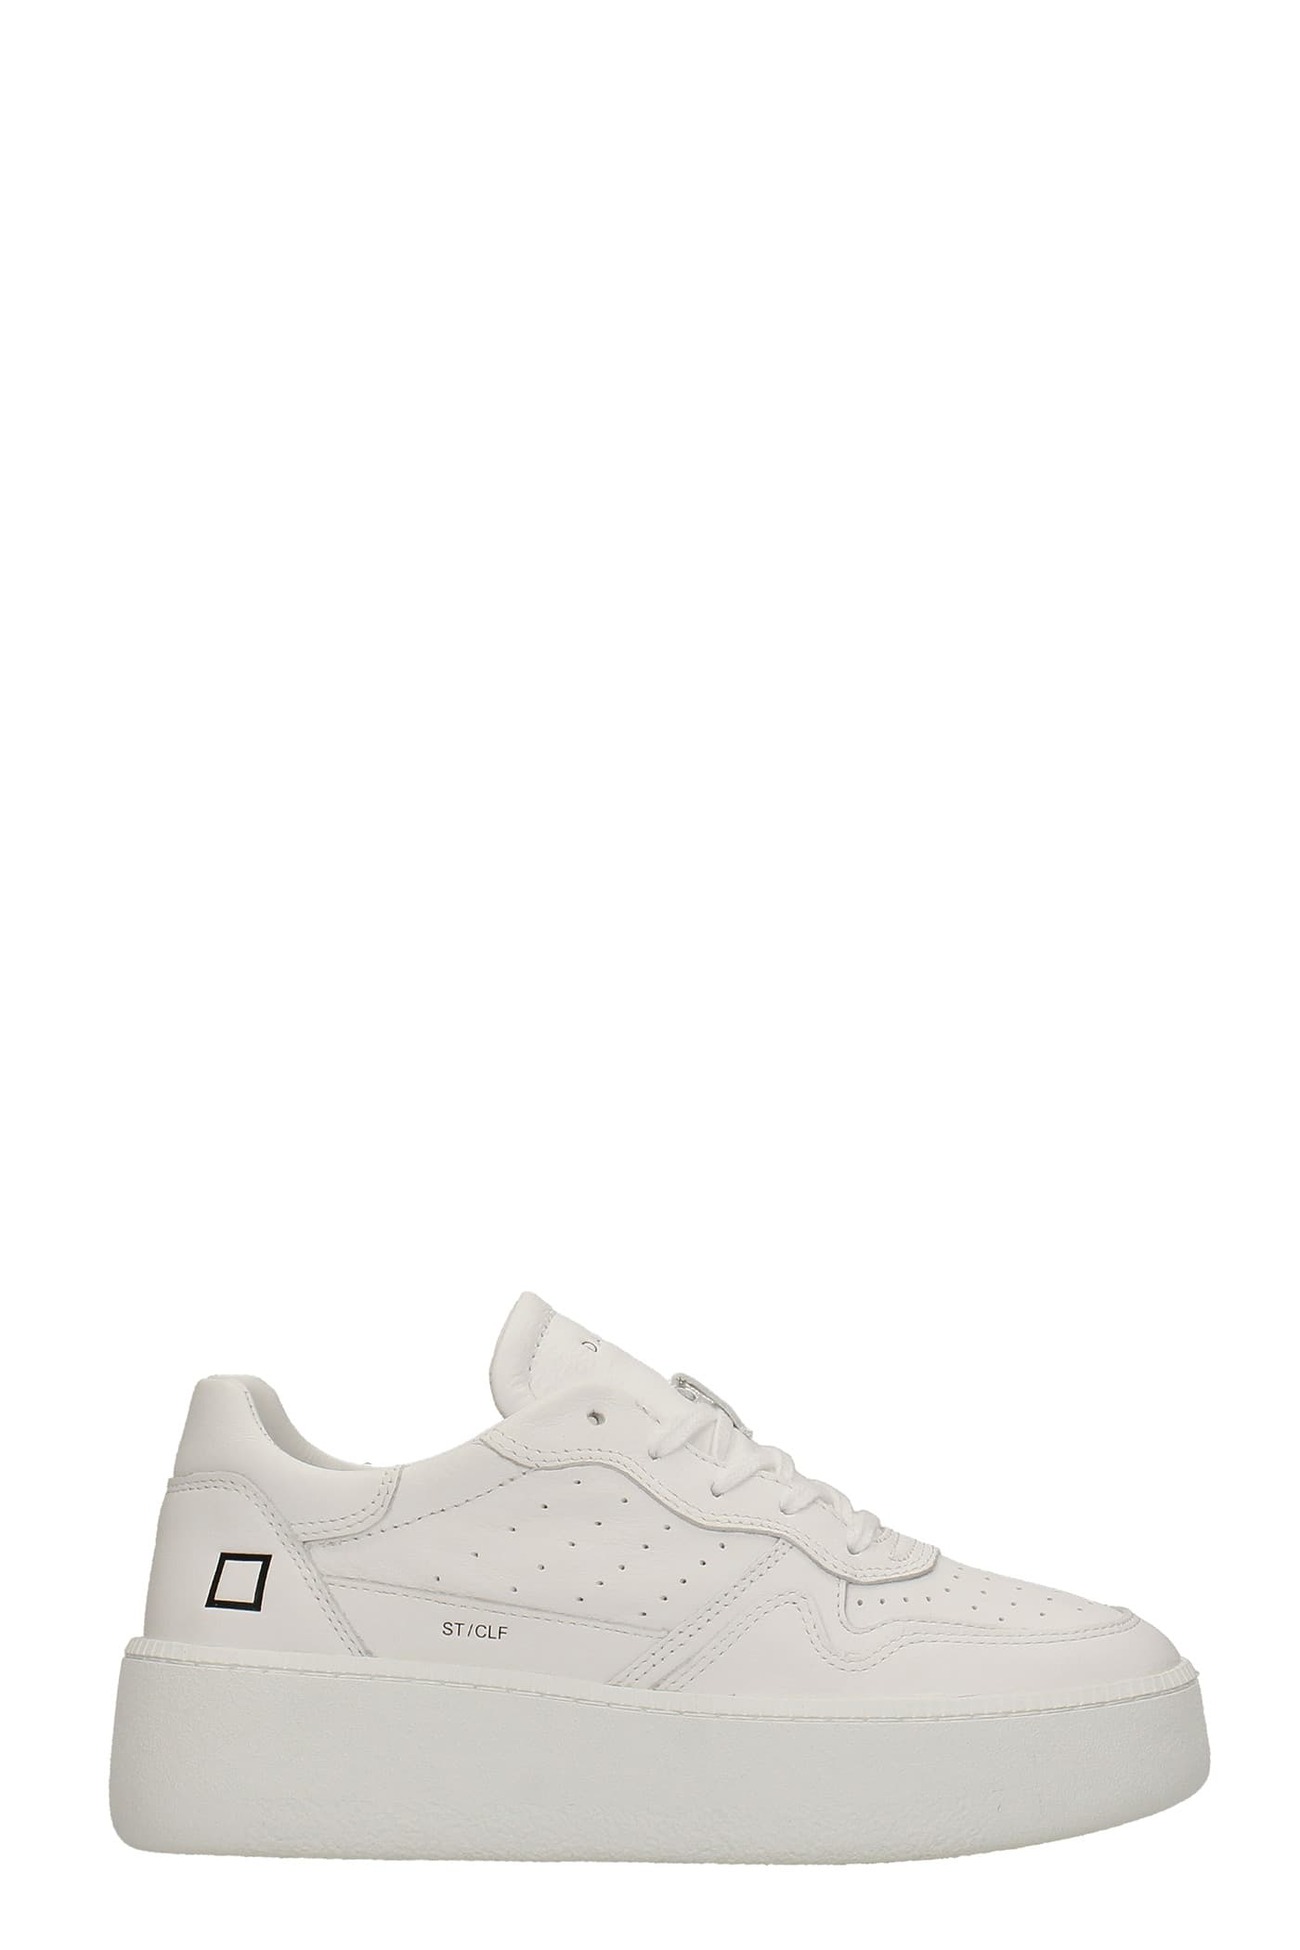 D.A.T.E. D.A.T.E. Step Sneakers In White Leather